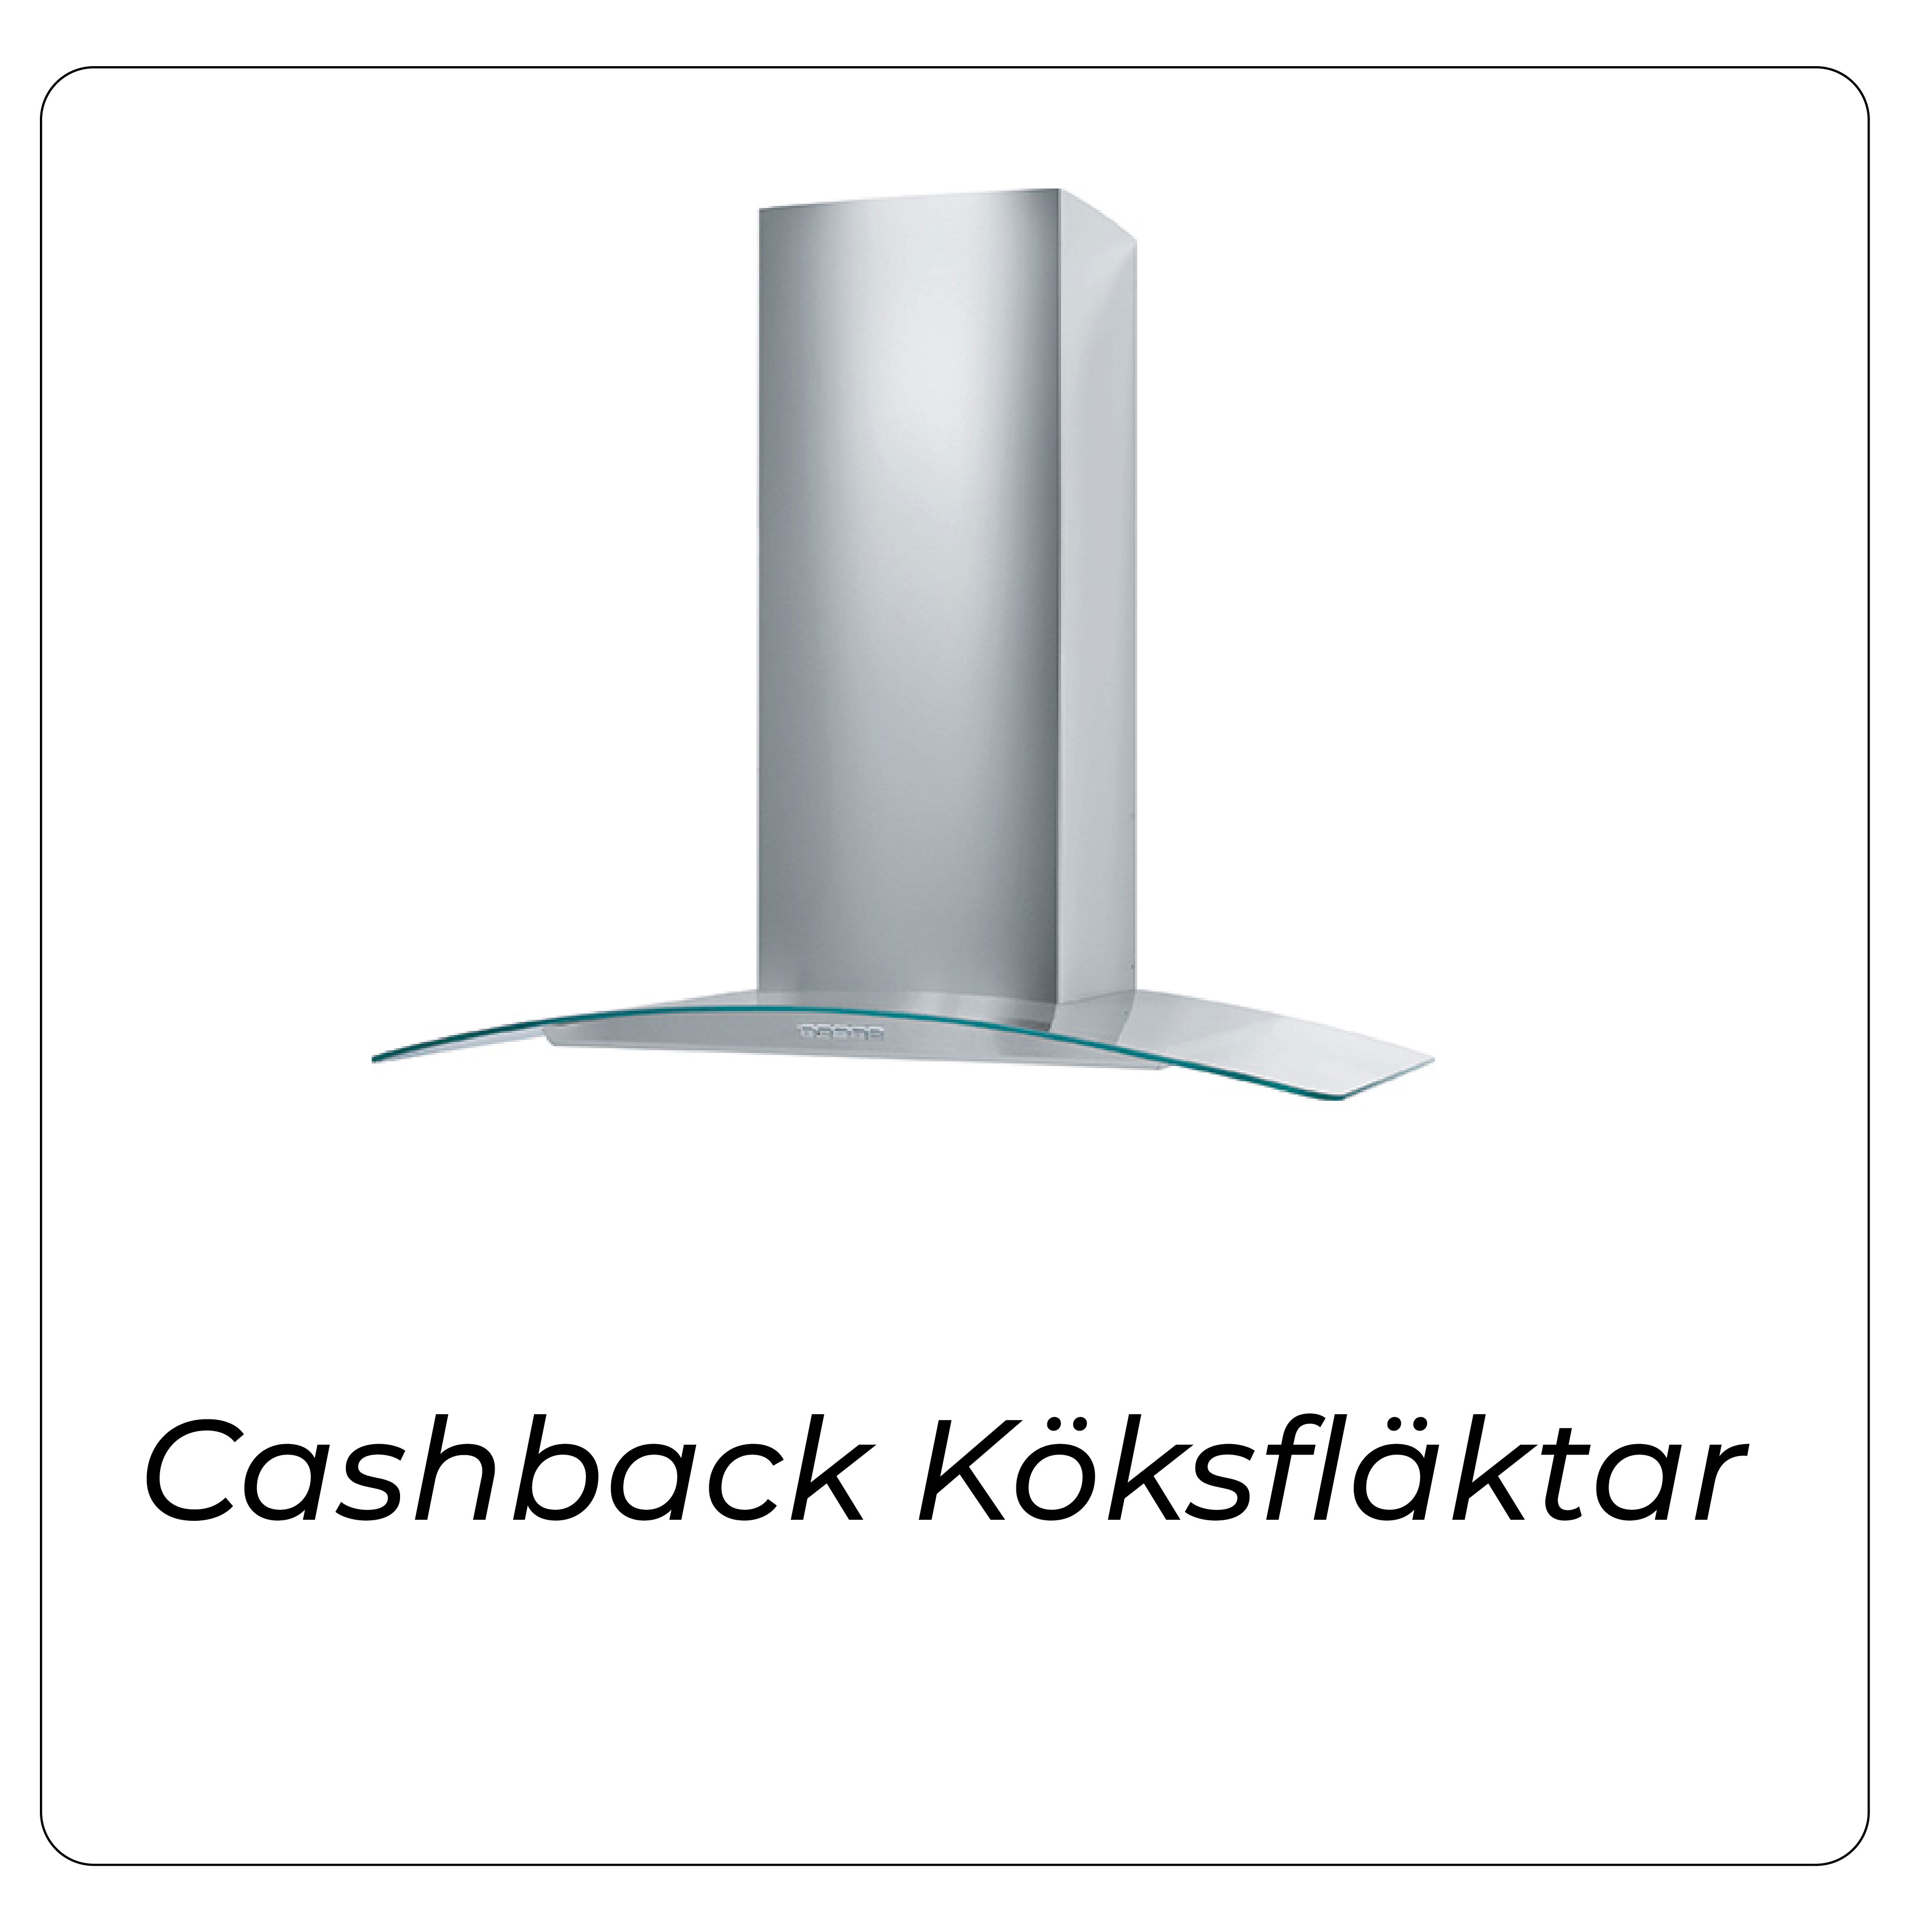 cashback-köksfläkt-bild-06.jpg